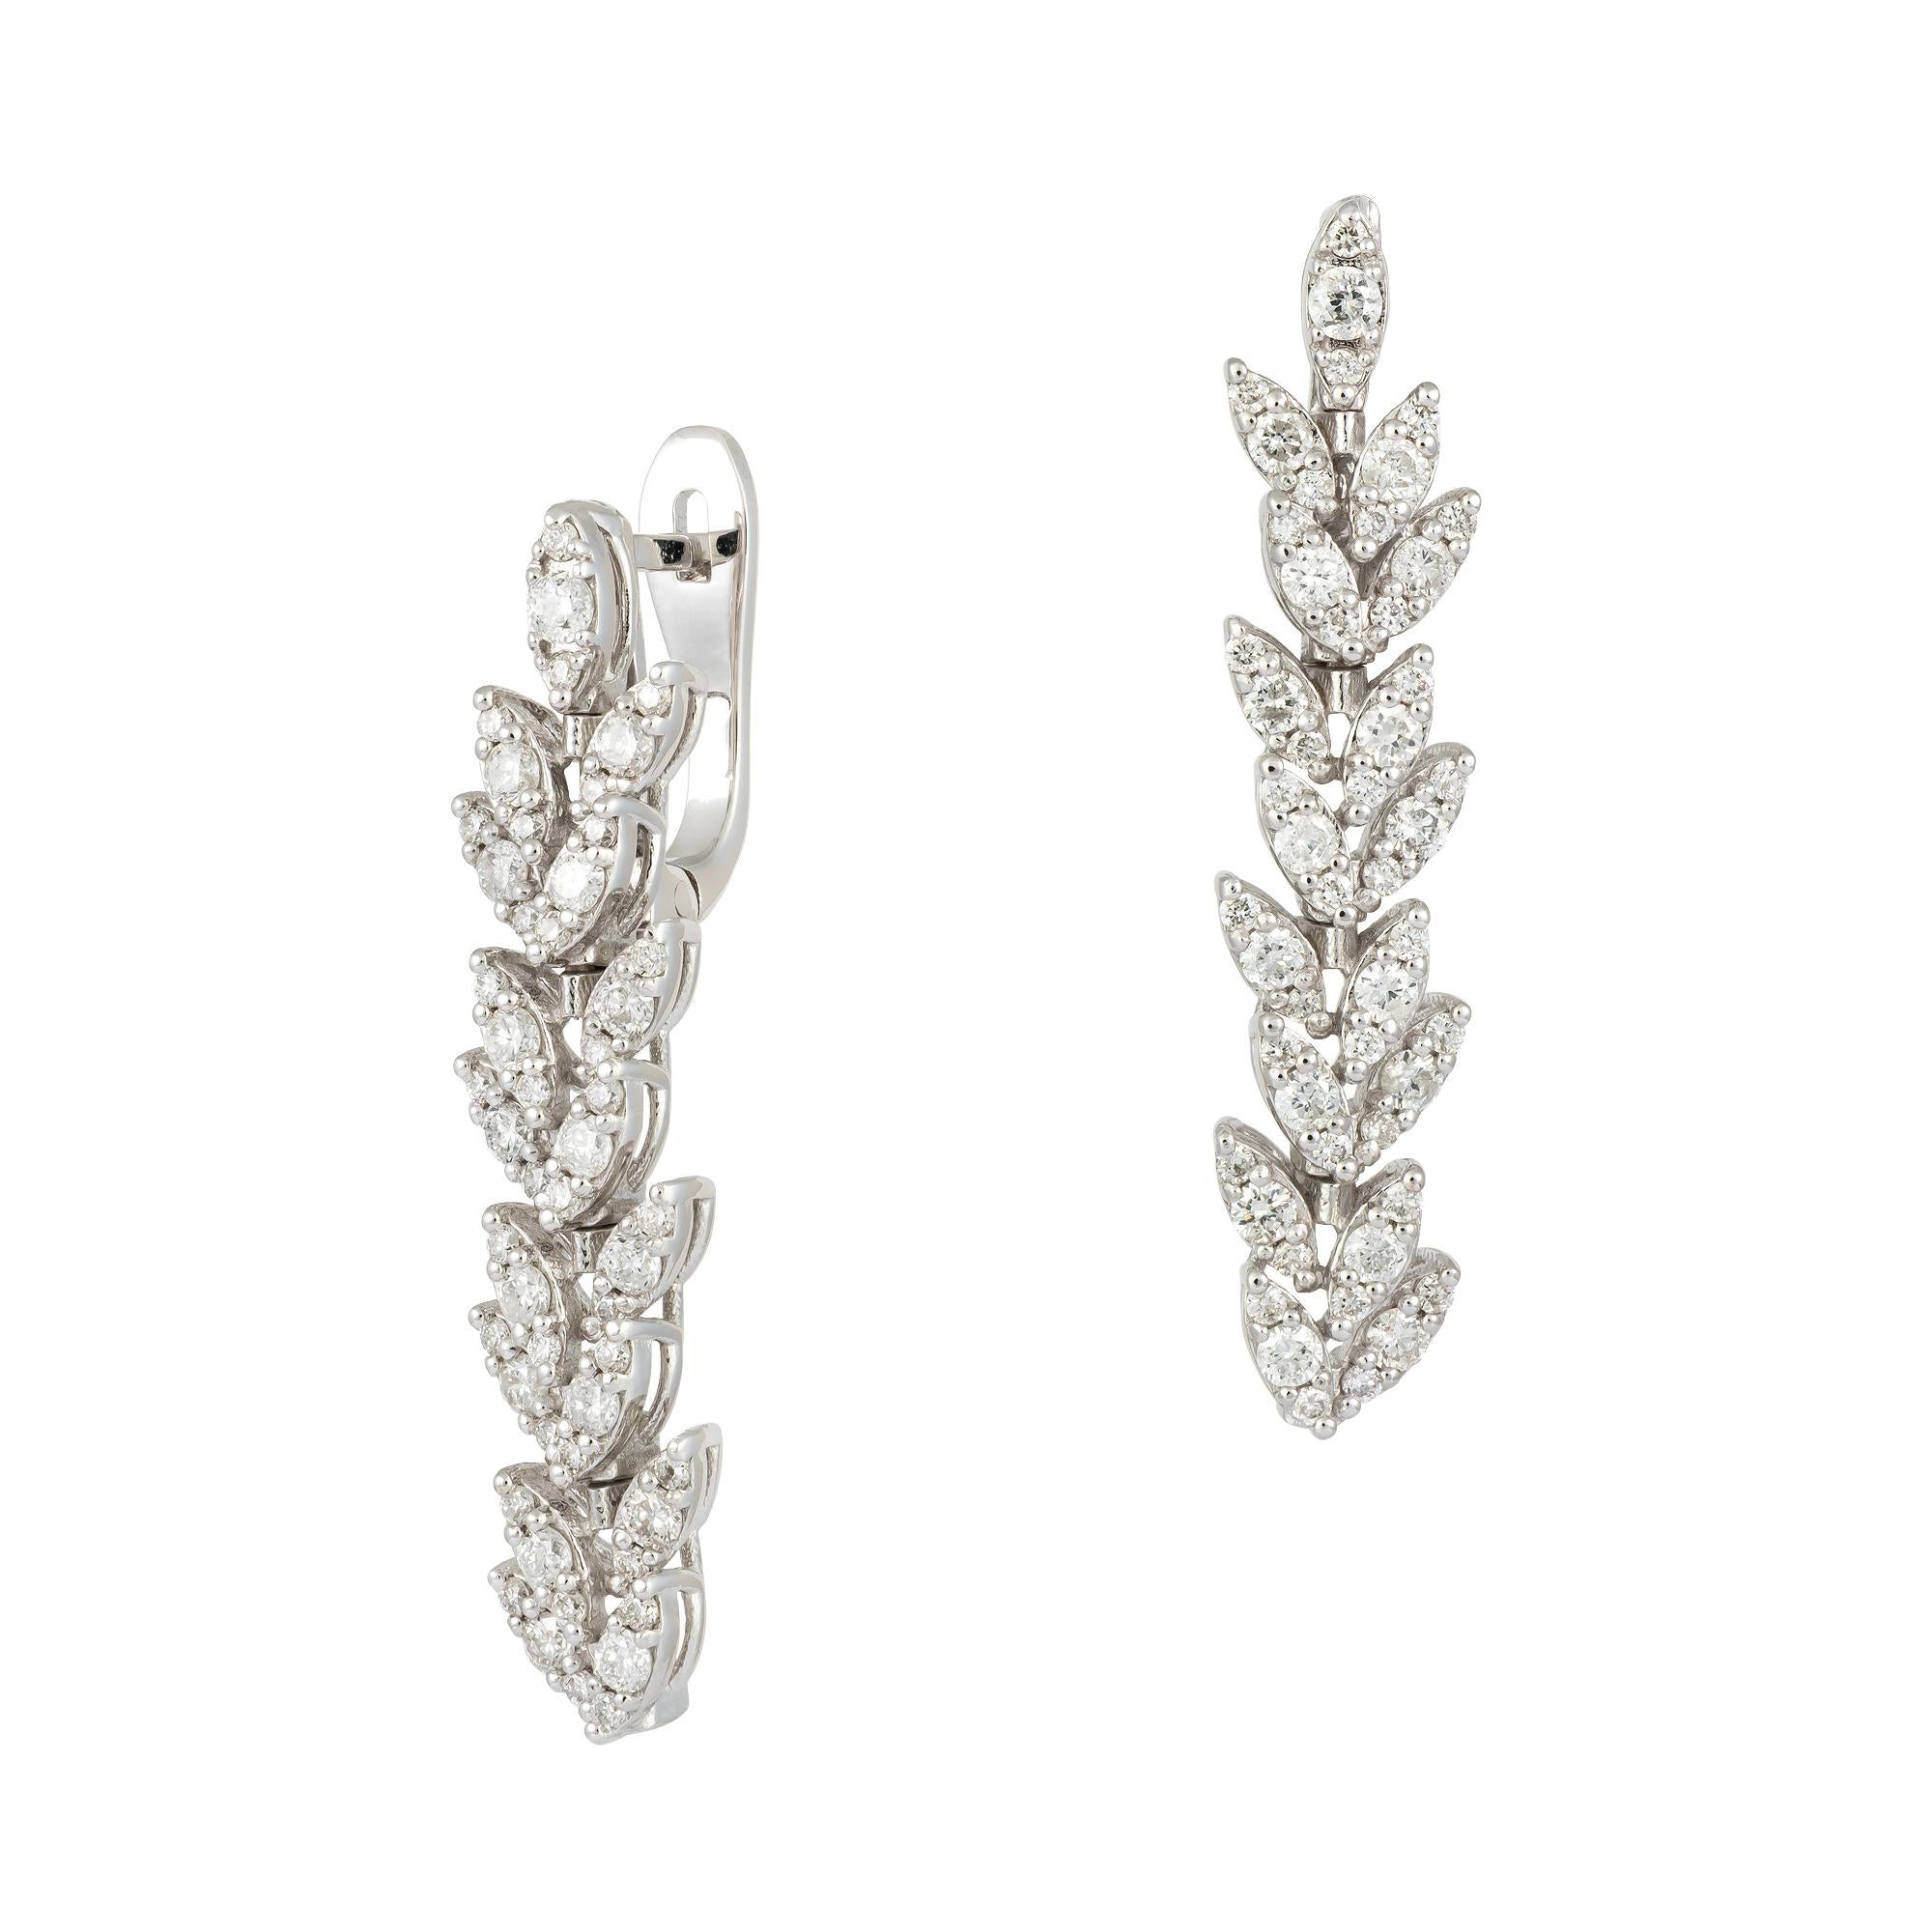 Modern Stunning Dangle White Gold 18K Earrings Diamond For Her For Sale